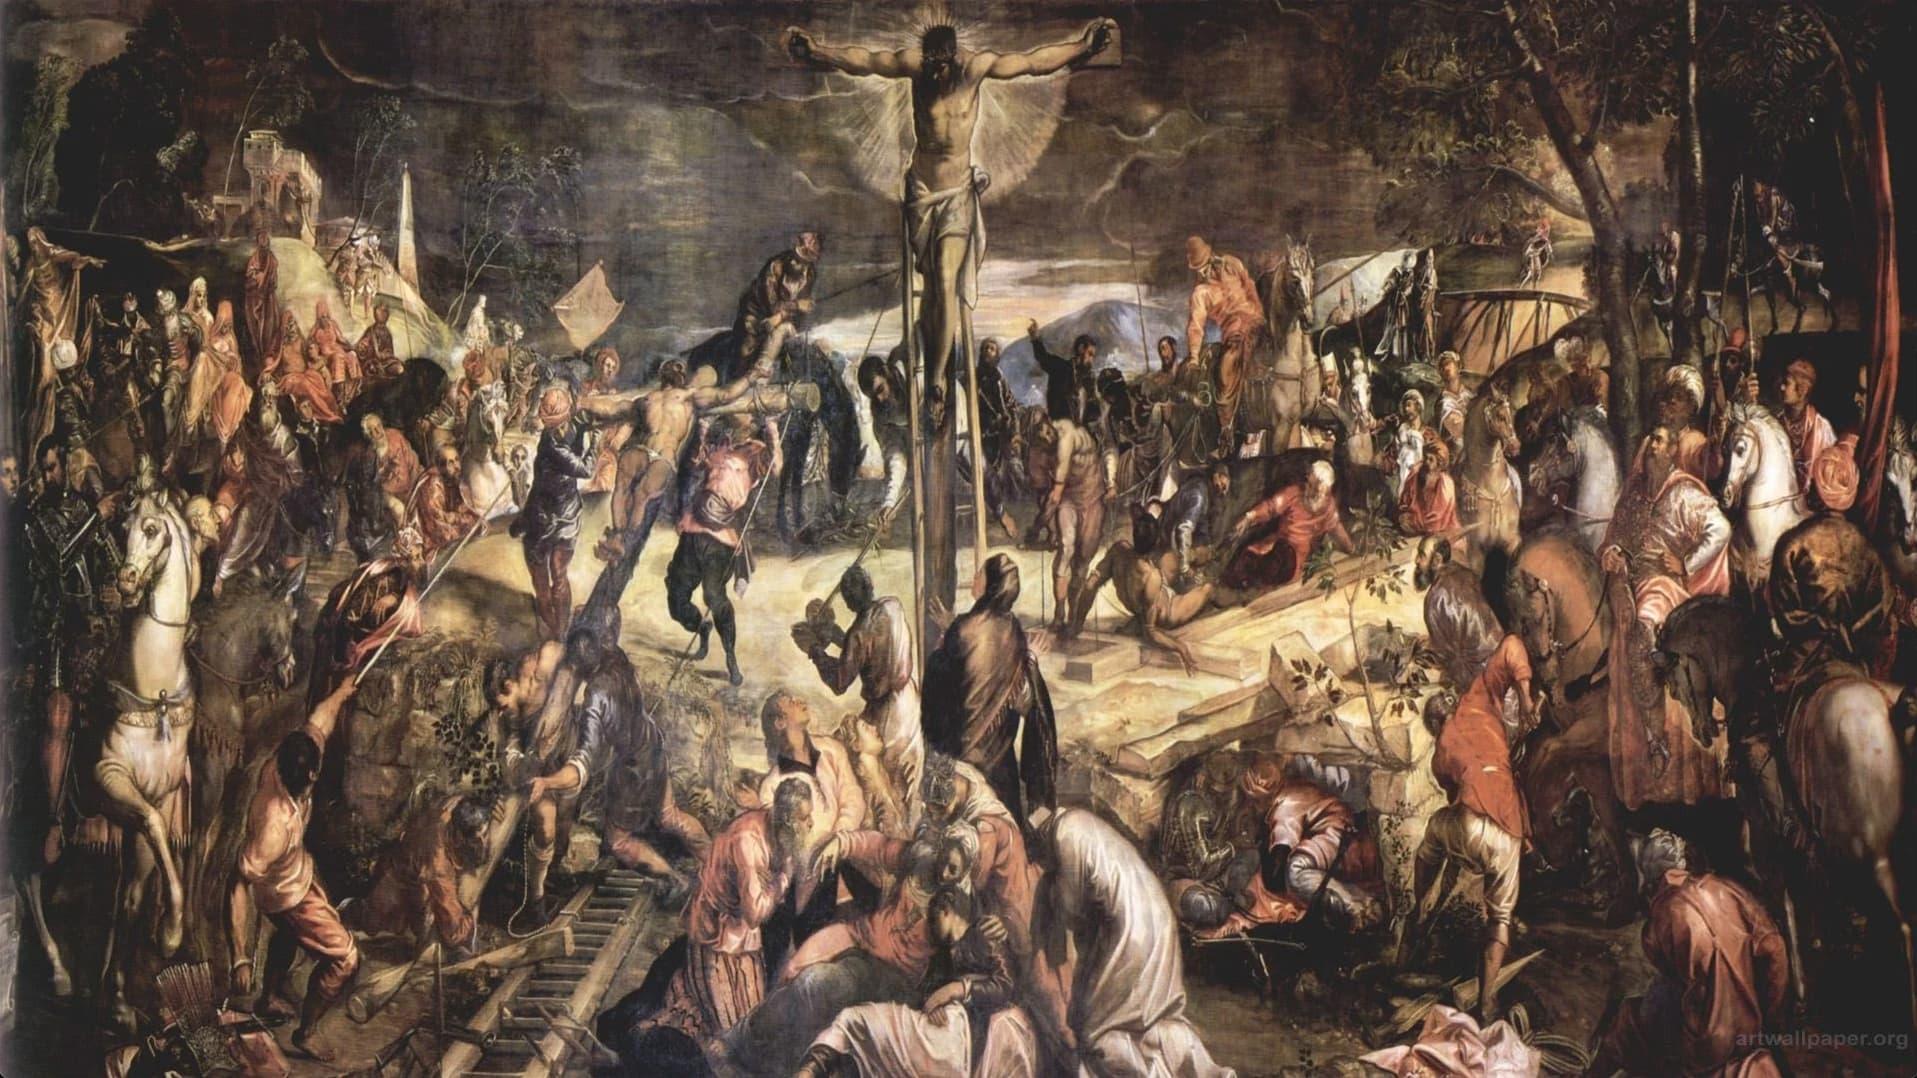 Tintoretto - L'artista che uccise la pittura backdrop